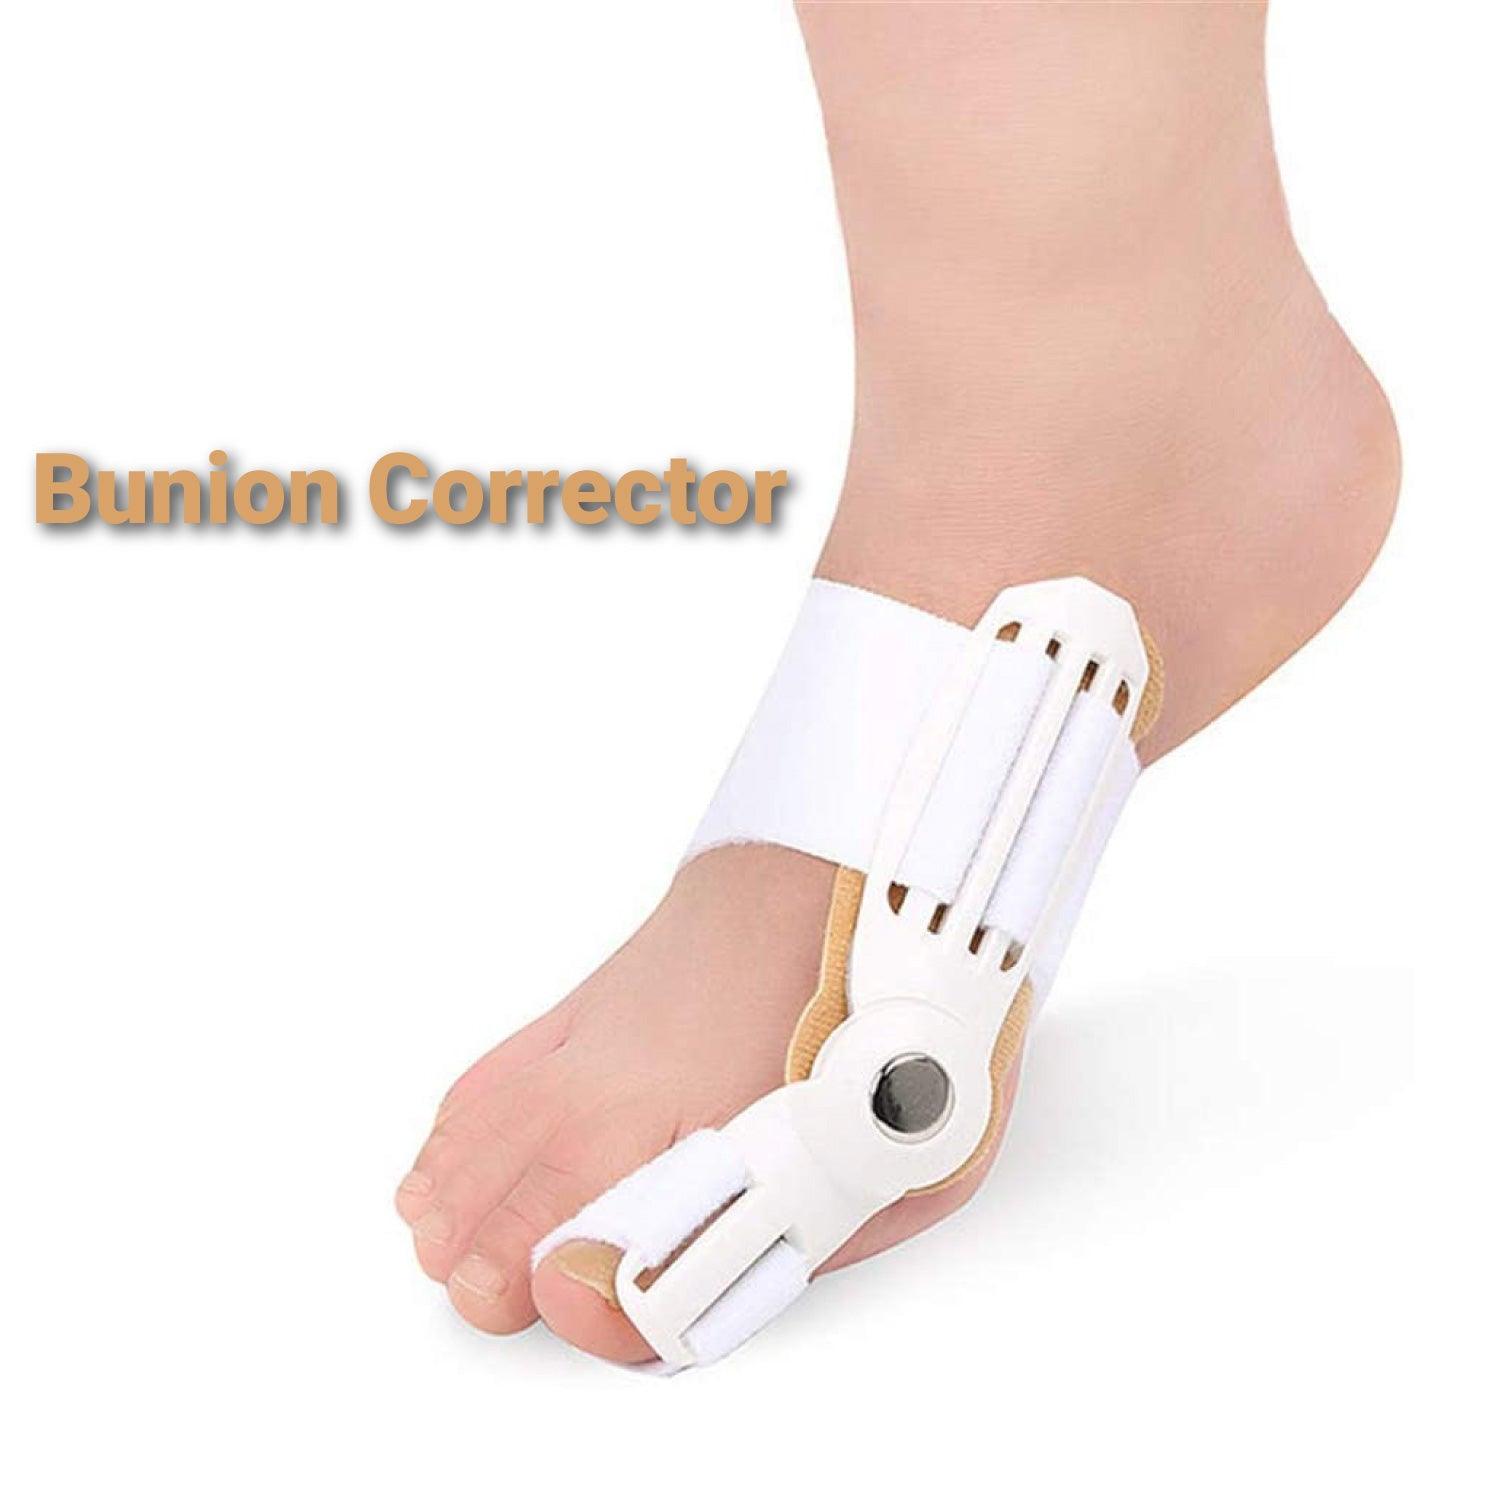 Bunion Corrector Shoes